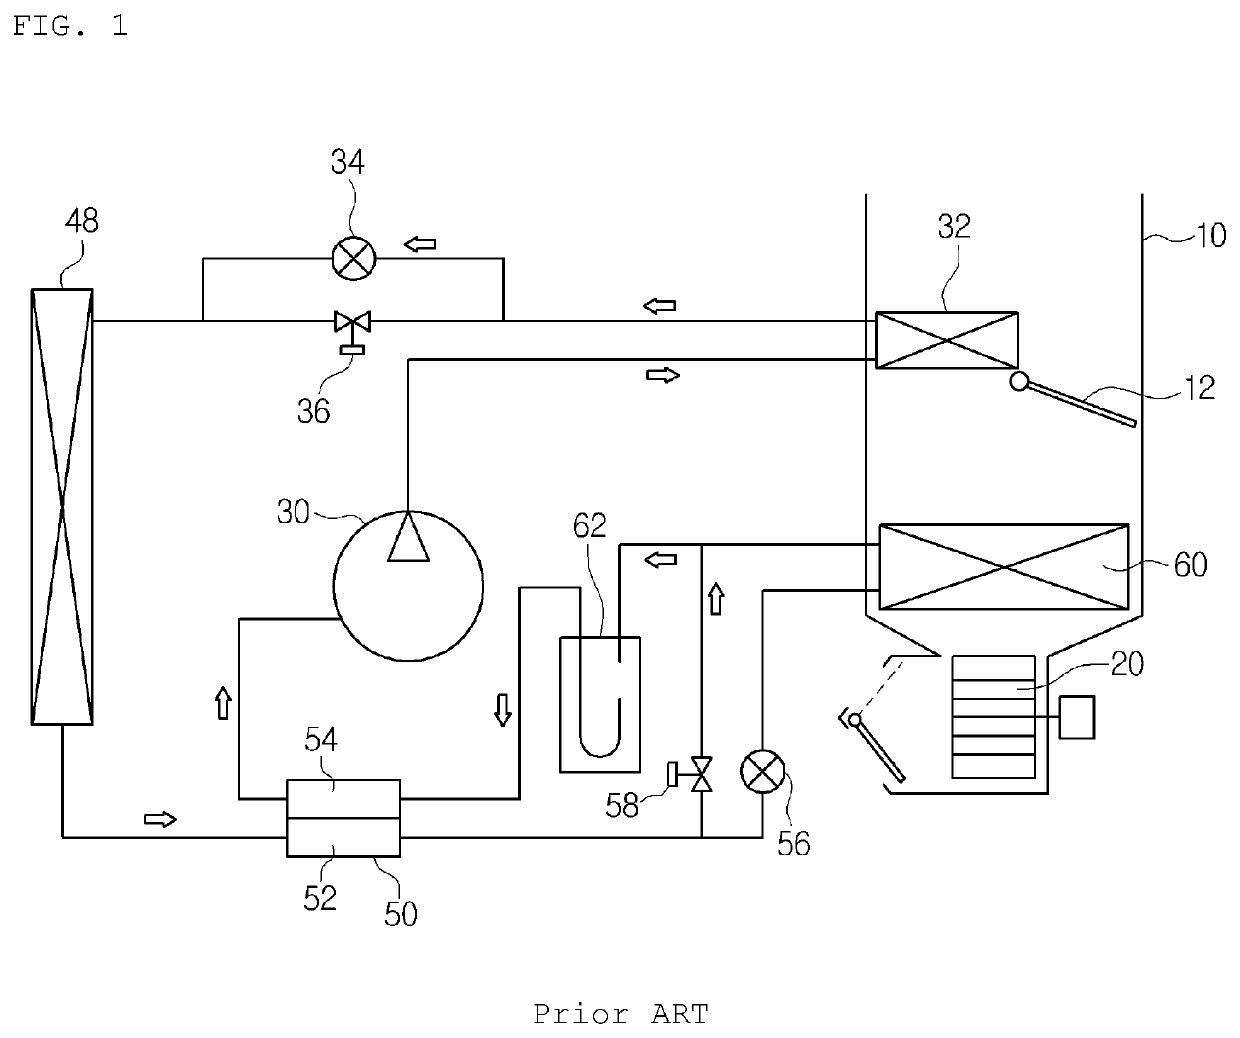 Vehicular heat pump system